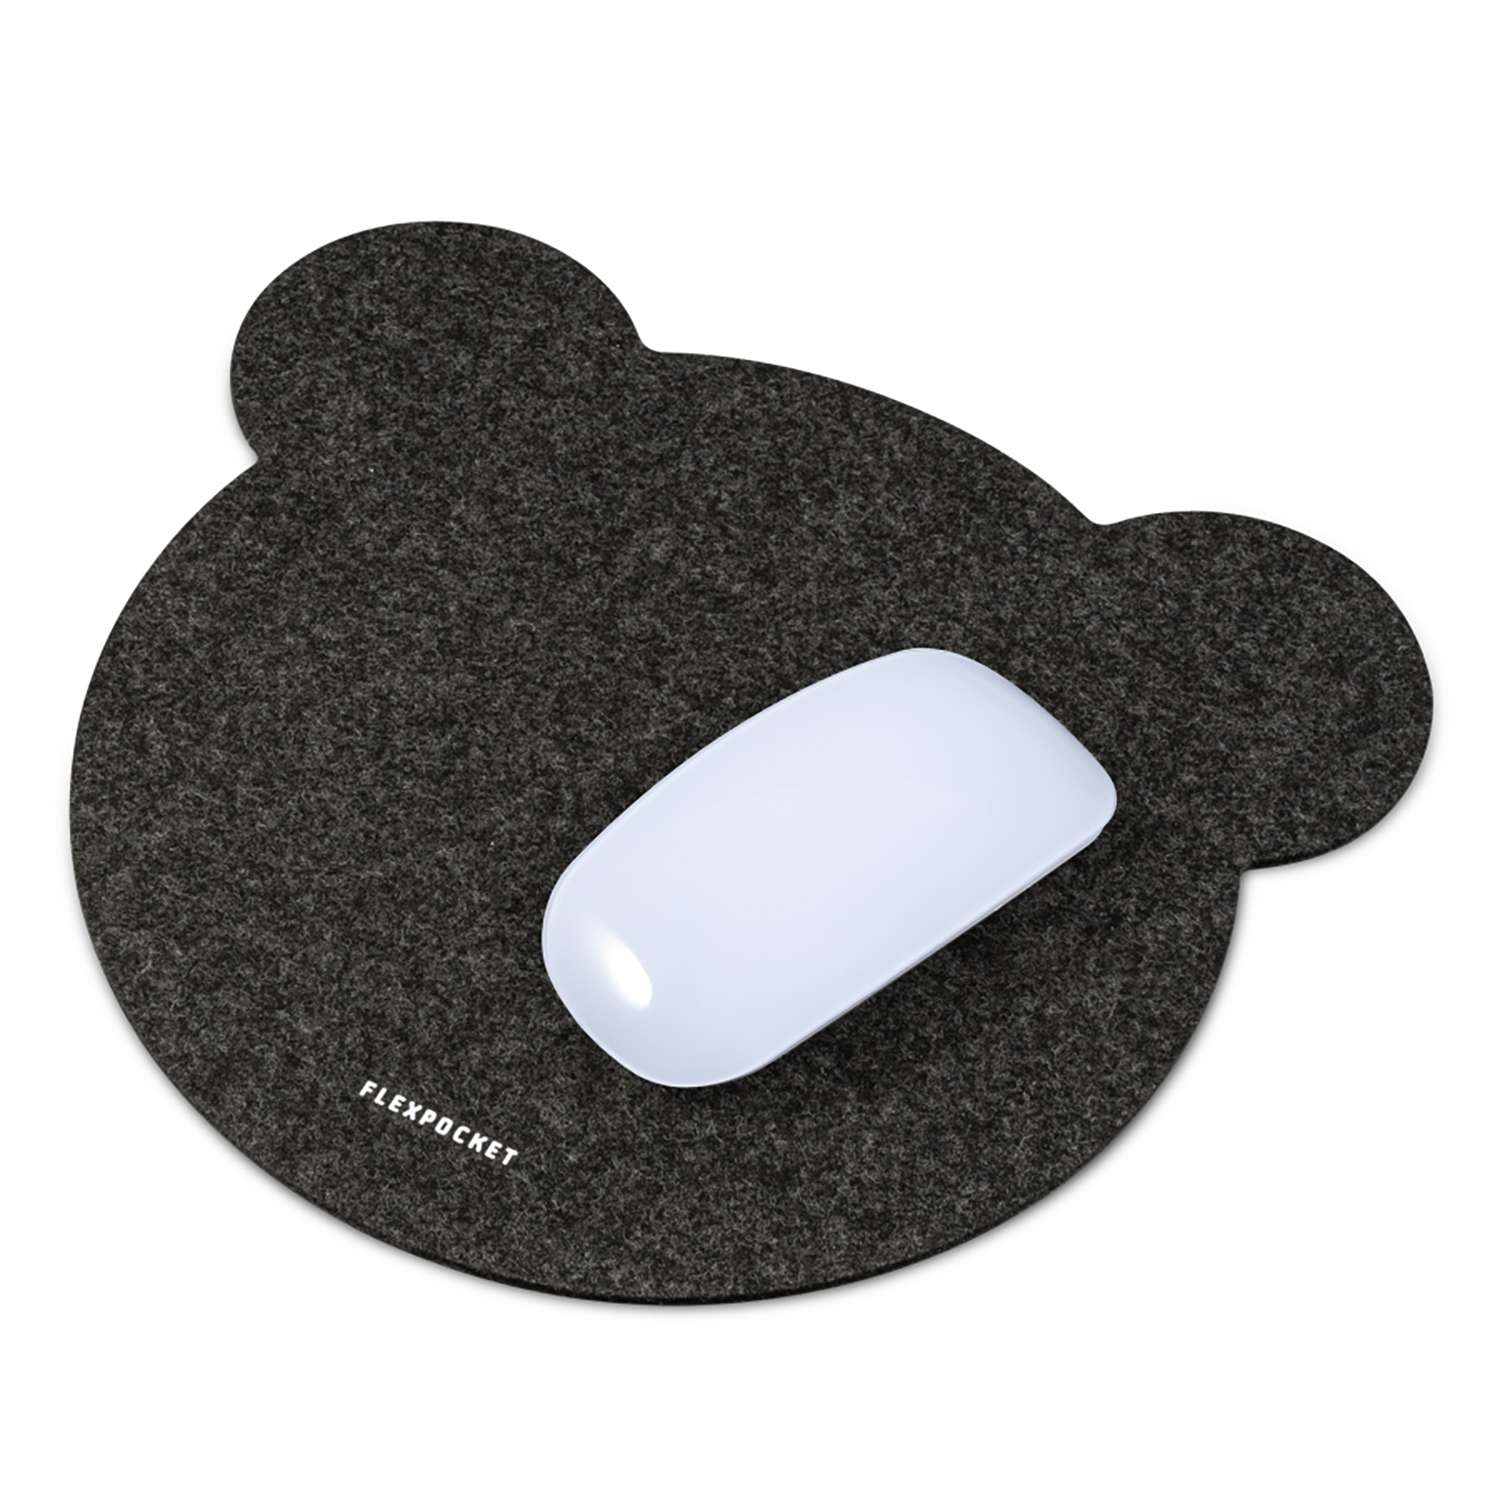 Настольный коврик Flexpocket для мыши 250х250мм черный - фото 2